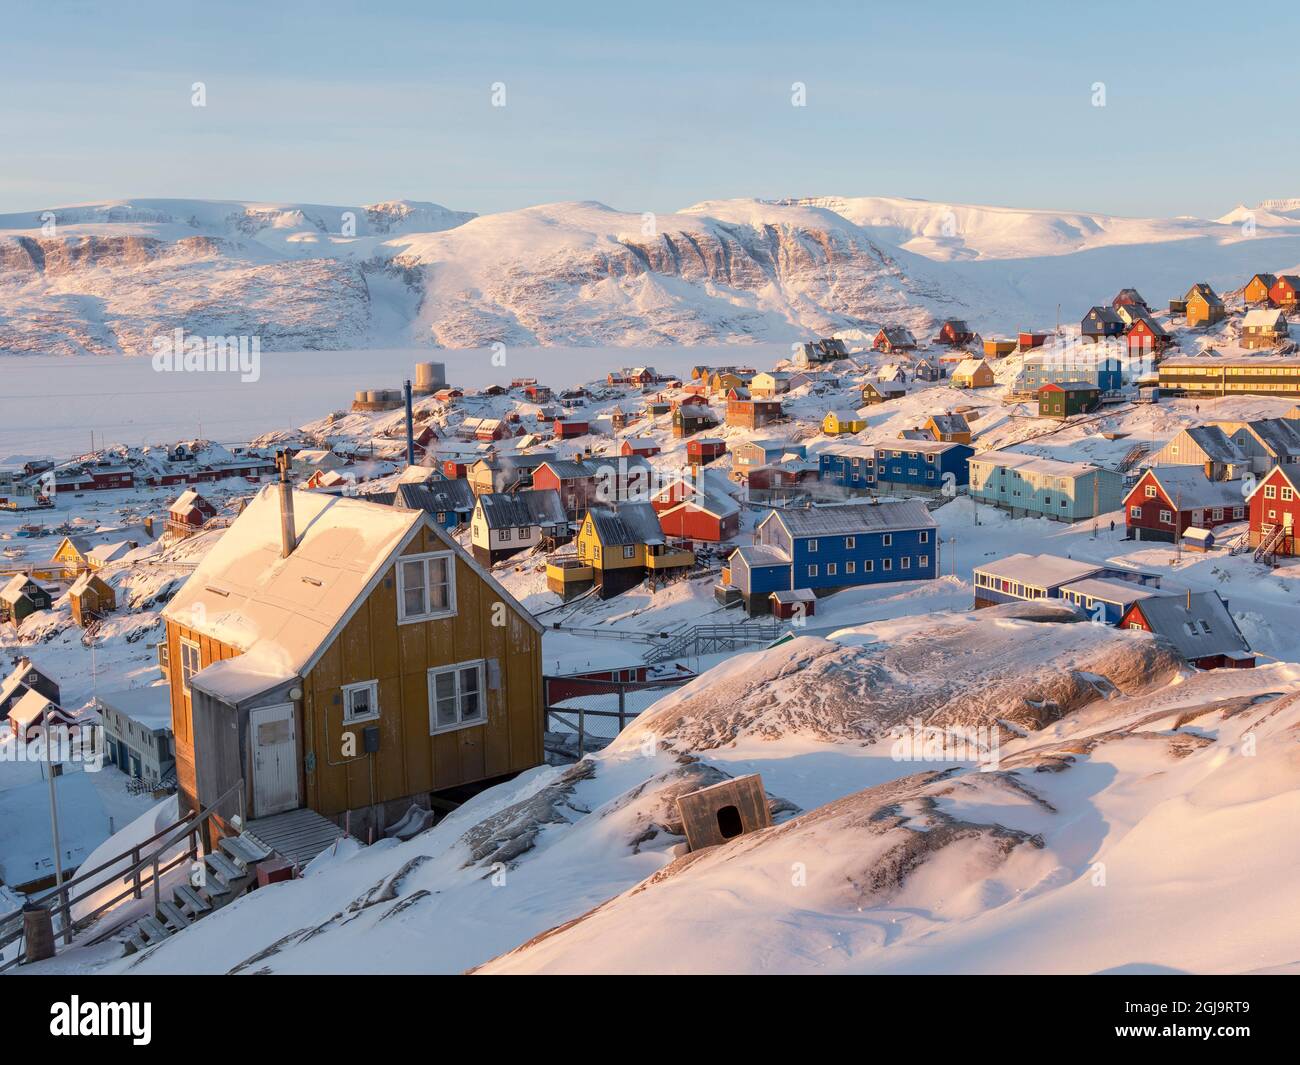 Ville d'Uummannaq pendant l'hiver dans le nord du Groenland. Le contexte est la péninsule de Nusssuaq (Nugssuaq). Danemark, Groenland Banque D'Images